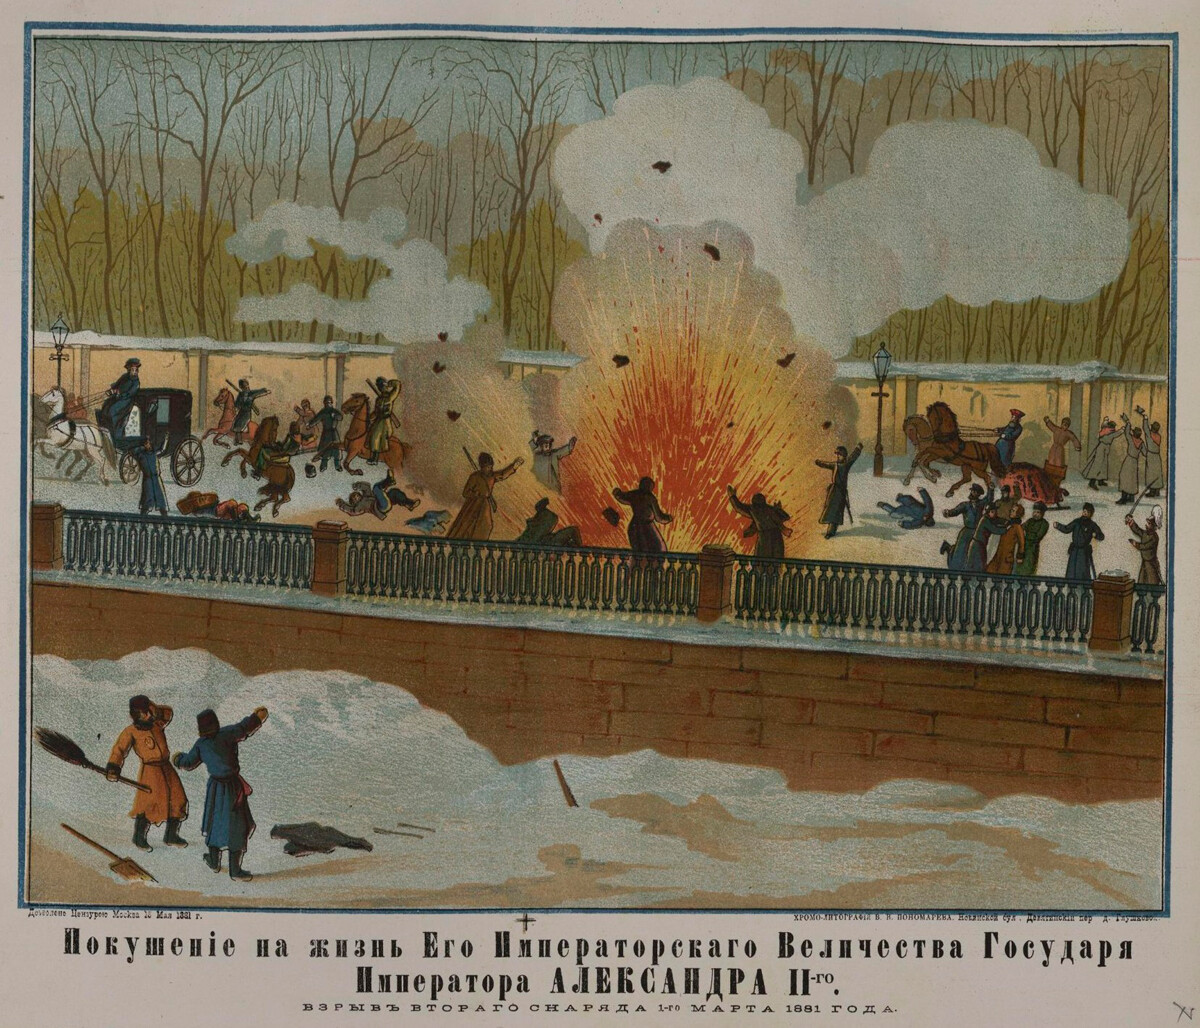 アレクサンドル2世暗殺事件、1881年3月1日